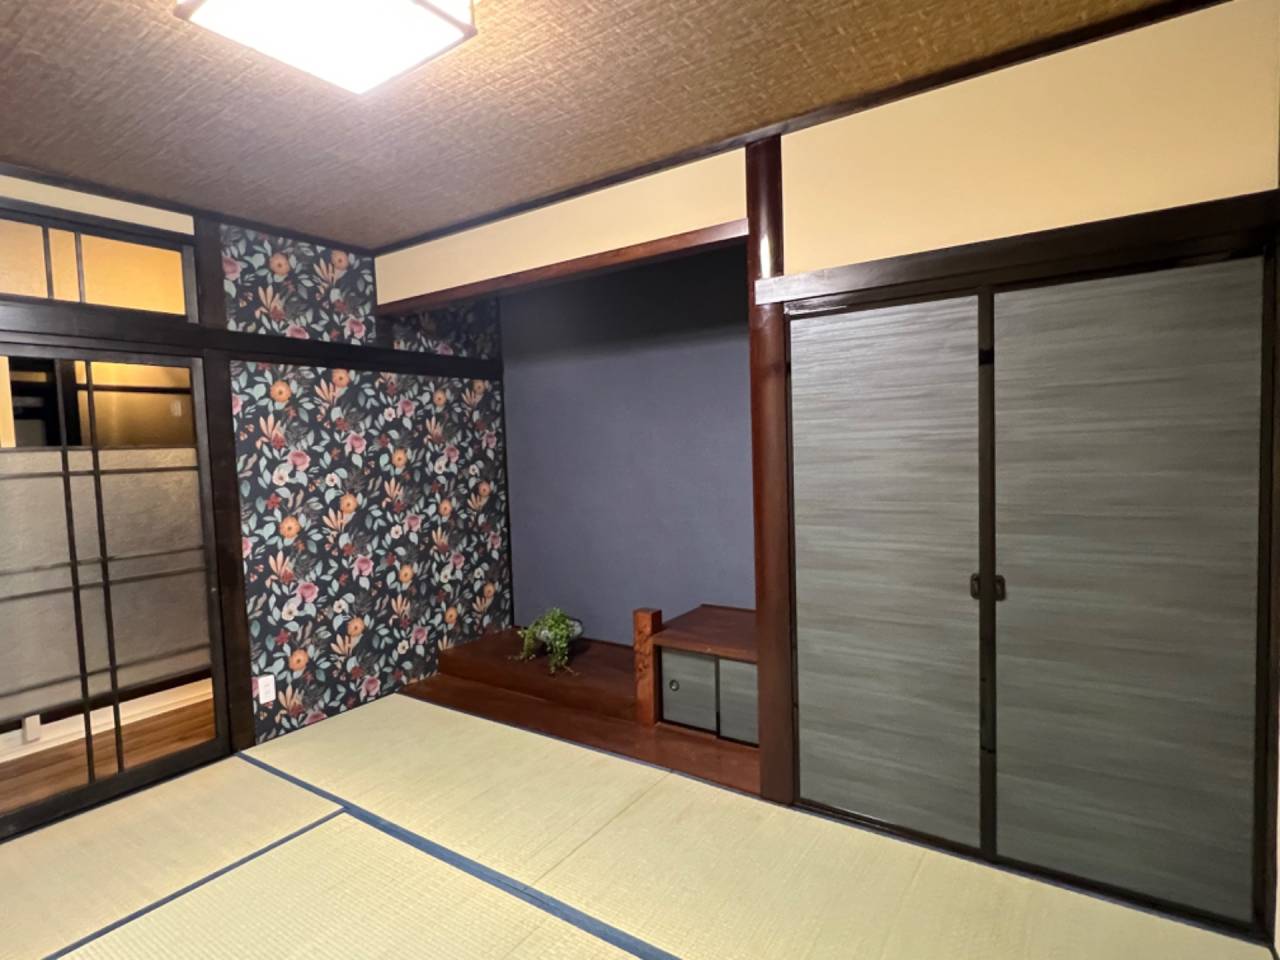 【和室の雰囲気を変えるリフォーム】宮崎市で新築・リノベーション| mikiデザインハウス